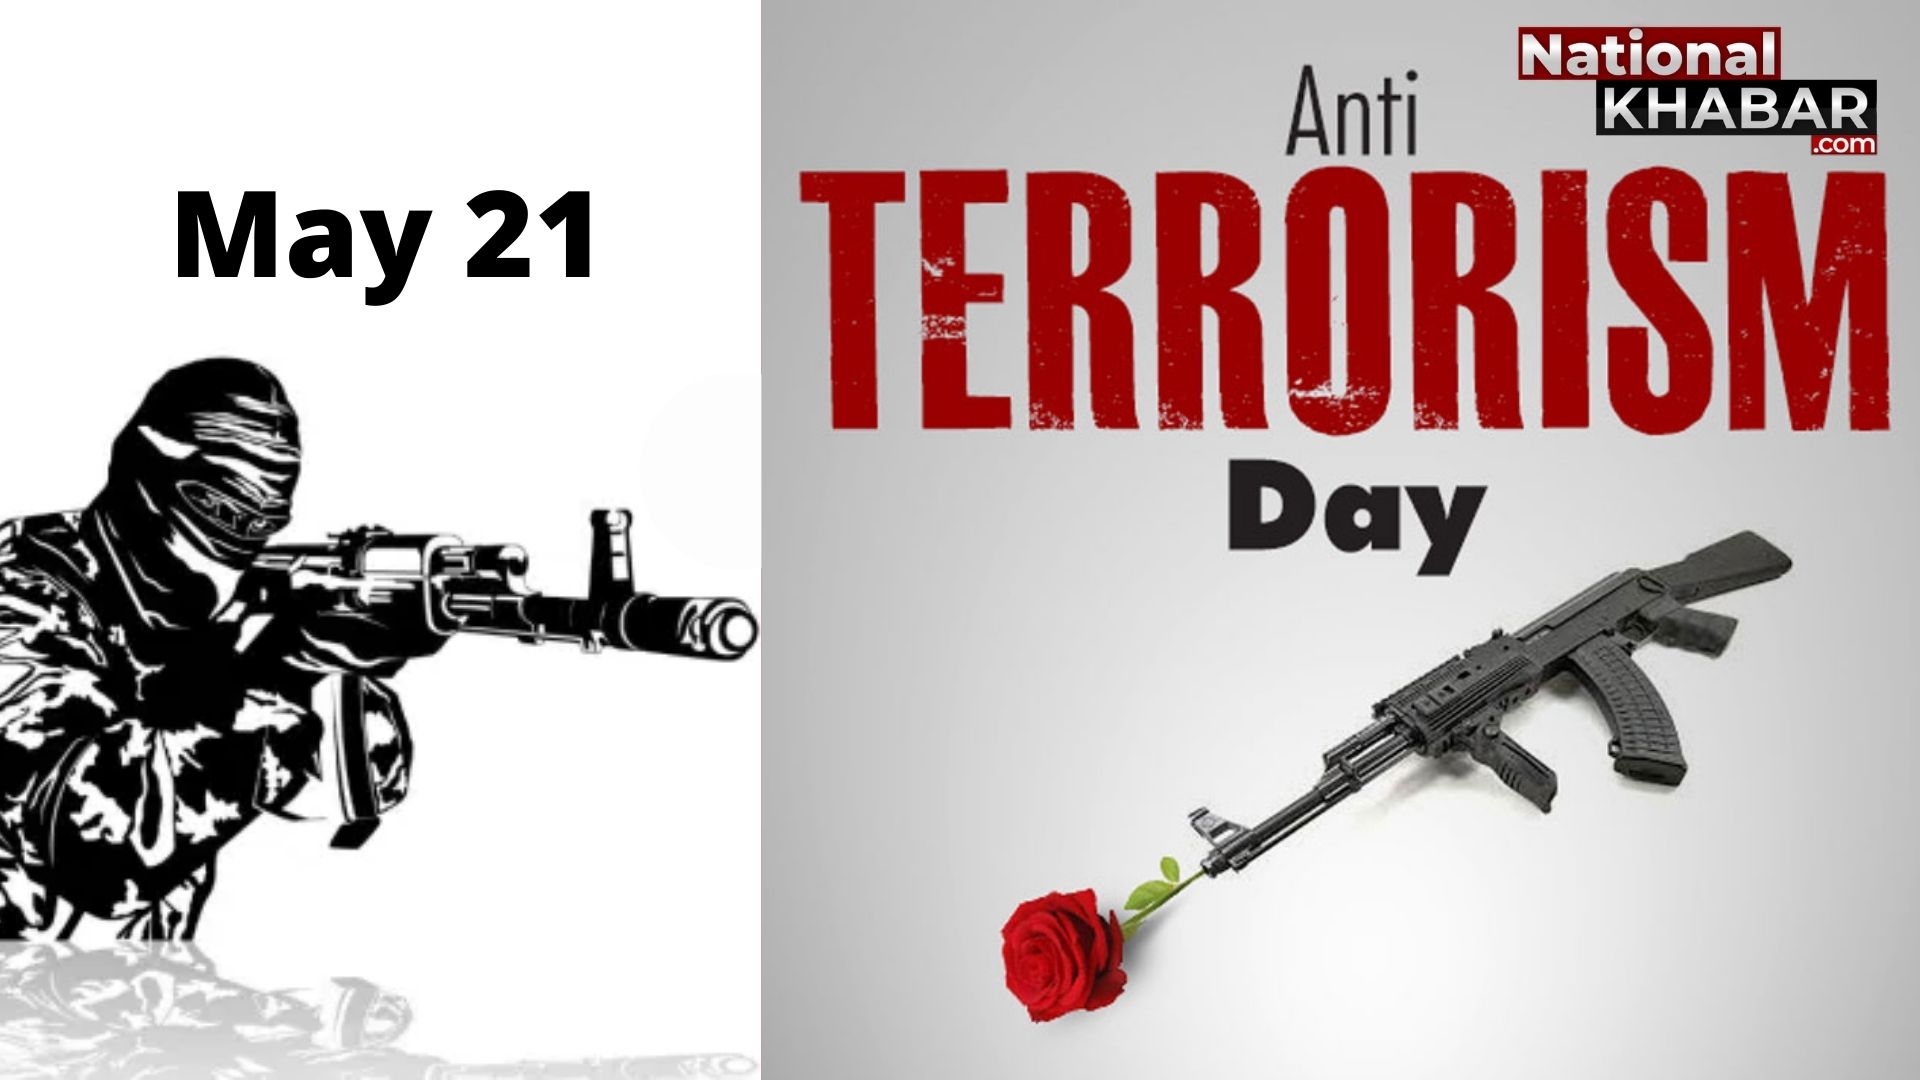 21 मई को मनाते हैं National Anti-Terrorism Day, ताकि आतंकवाद से मुक्त हो देश